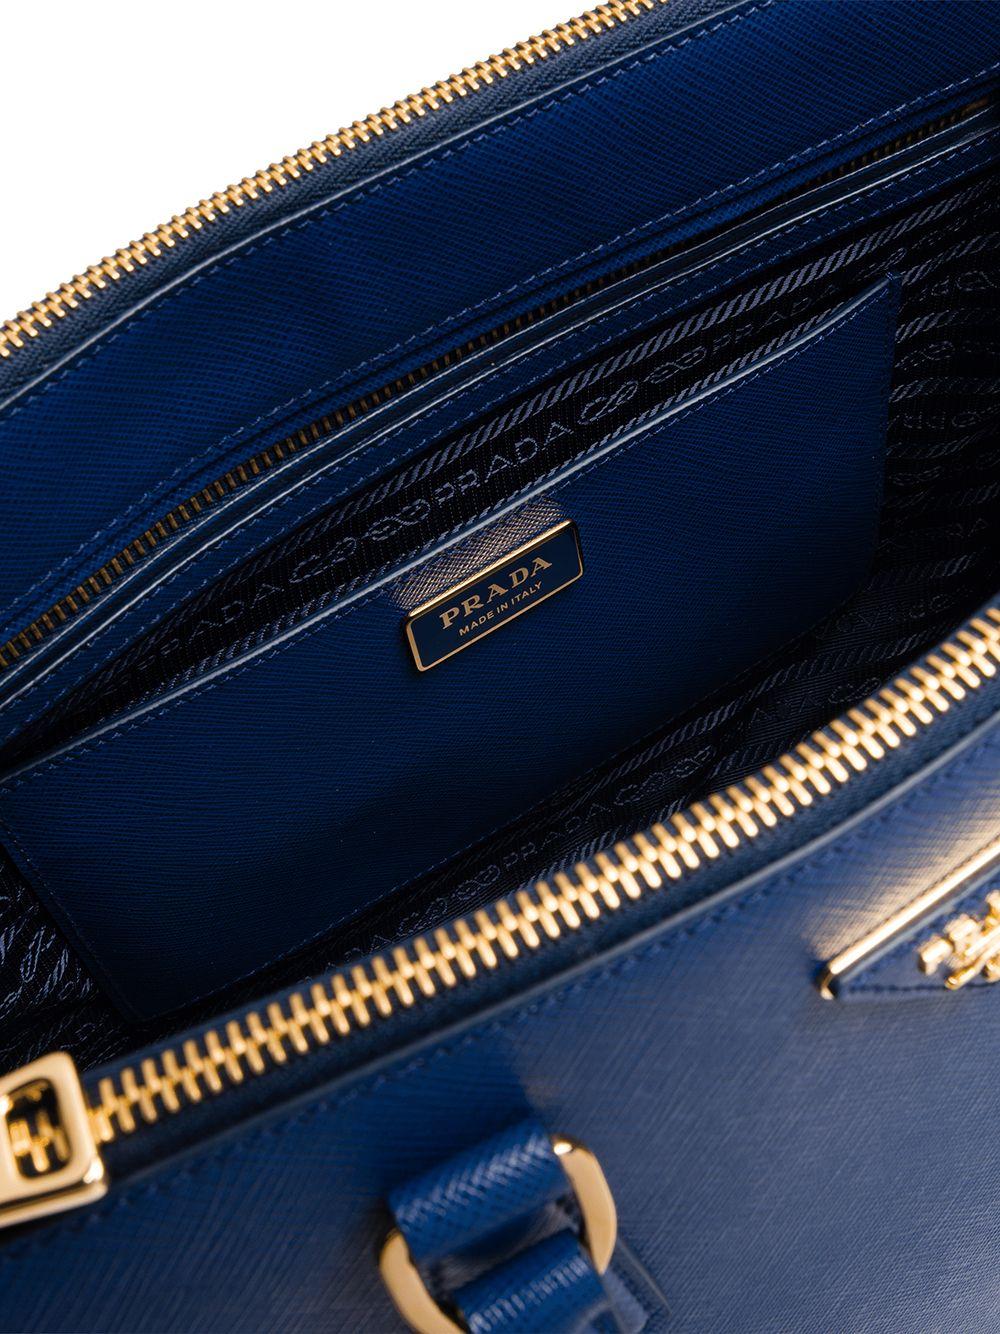 Prada Galleria Medium Saffiano Leather Bag in Blue | Lyst UK